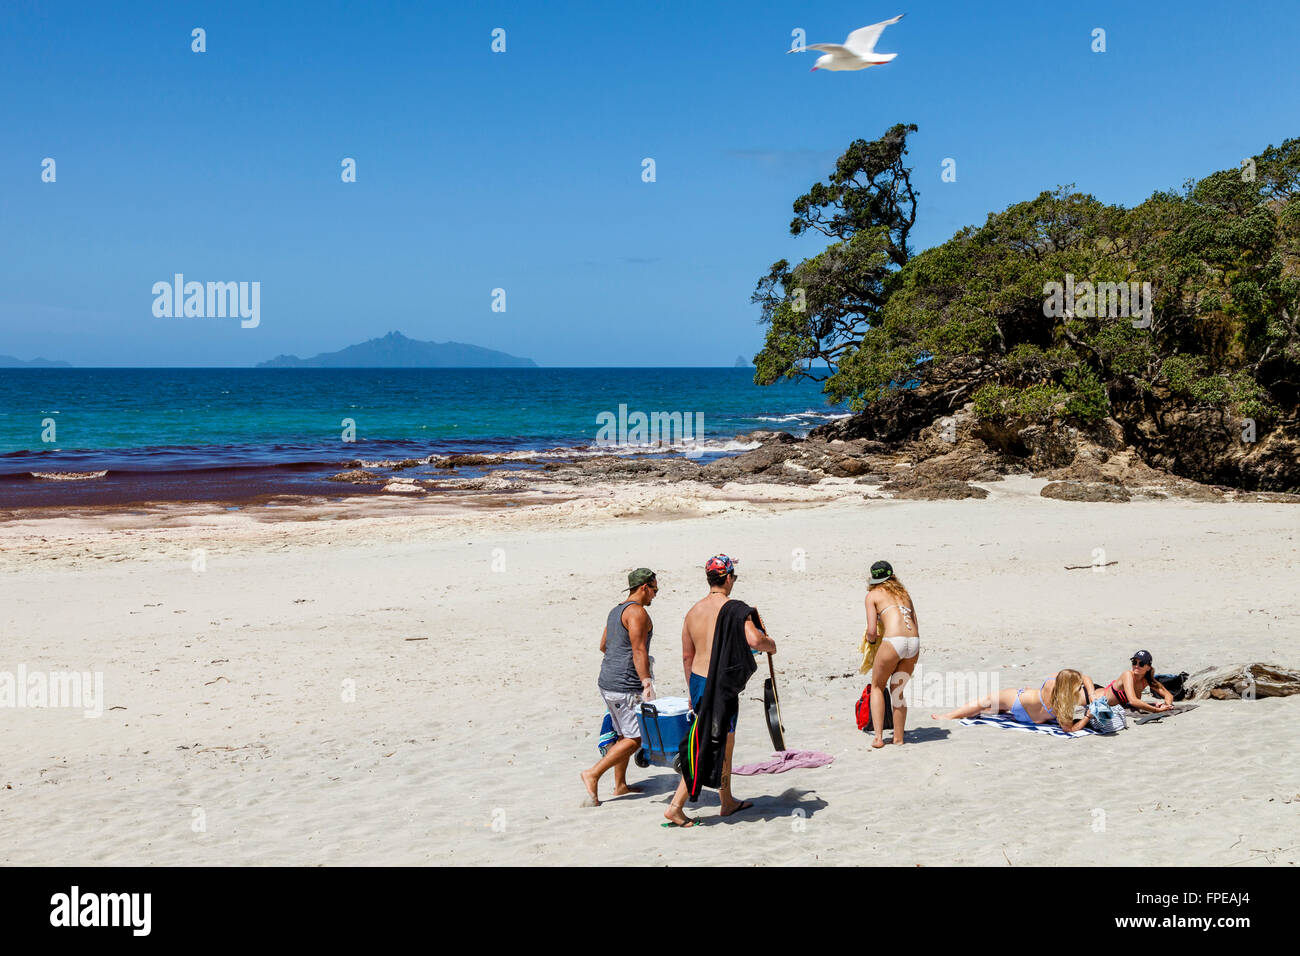 Les jeunes sur la plage de Waipu Cove, Waipu, Nouvelle-Zélande Banque D'Images